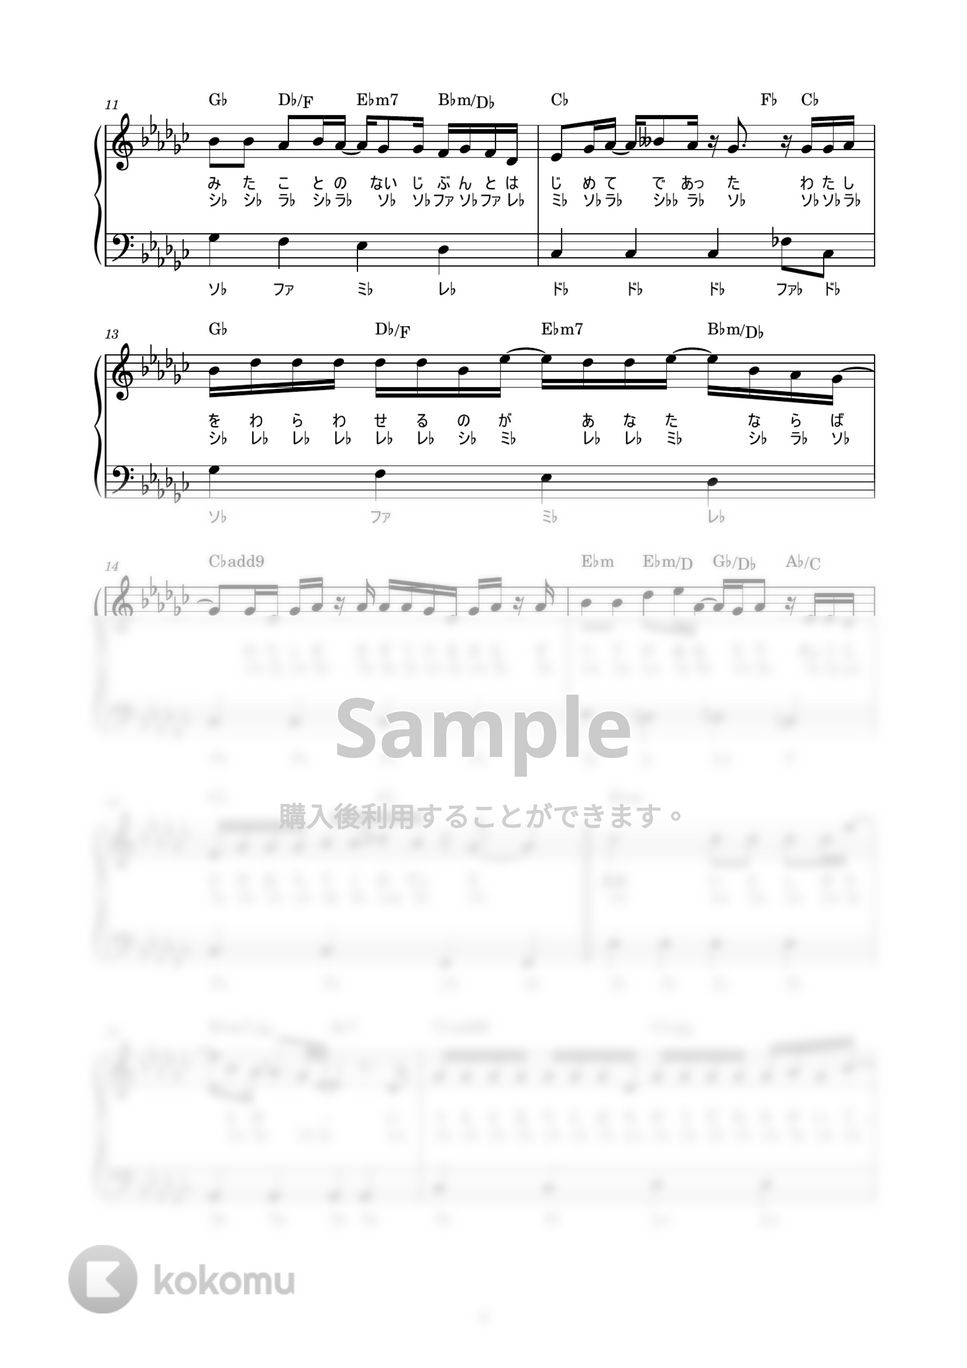 C&K - みかんハート (かんたん / 歌詞付き / ドレミ付き / 初心者) by piano.tokyo